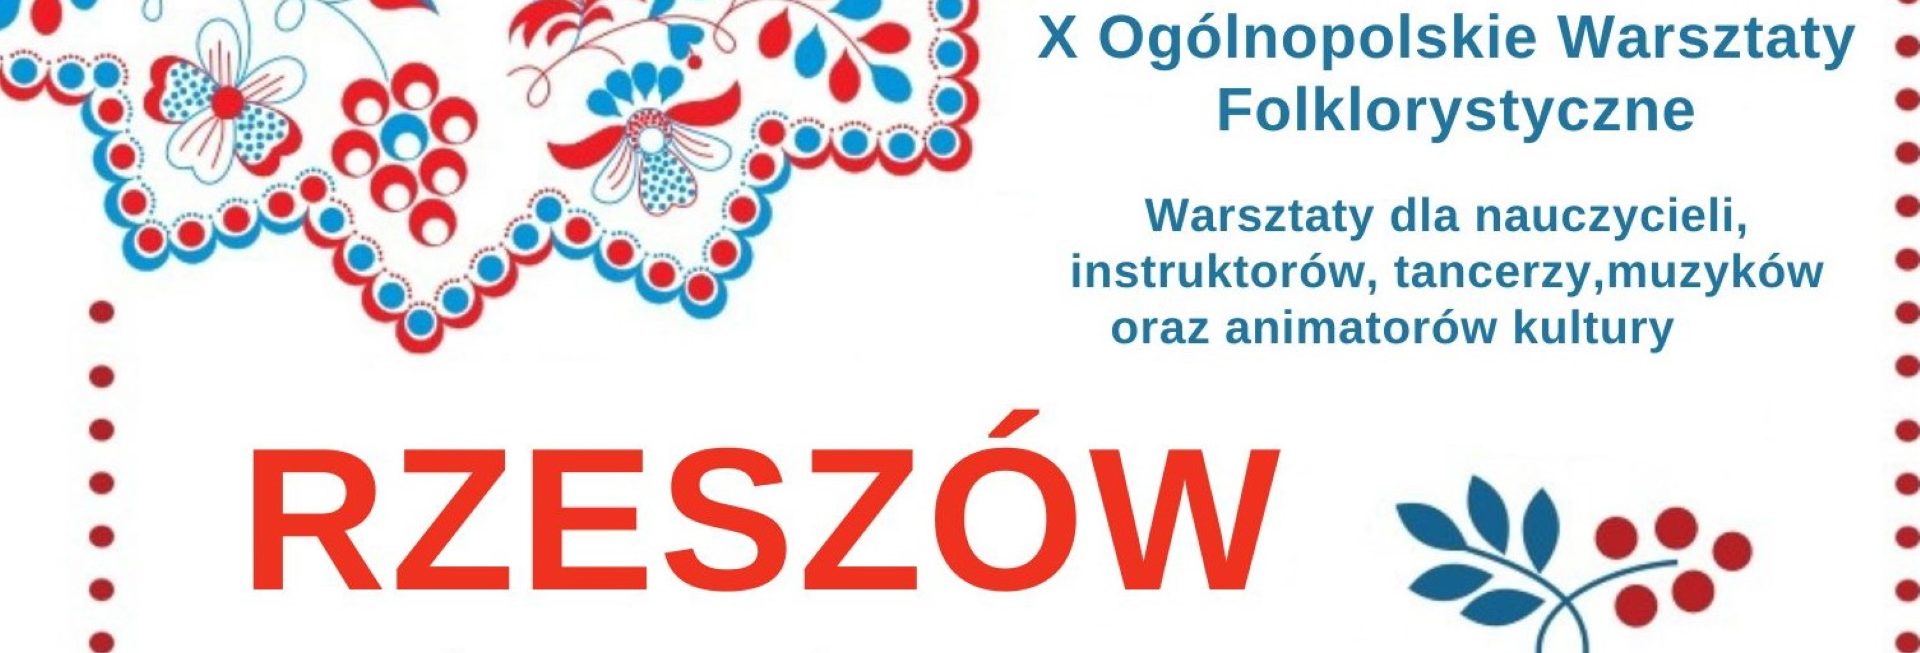 Plakat zapraszający do Ełku na Ogólnopolskie Warsztaty Folklorystyczne MAZURSKIE GUZINY Ełk 2022.